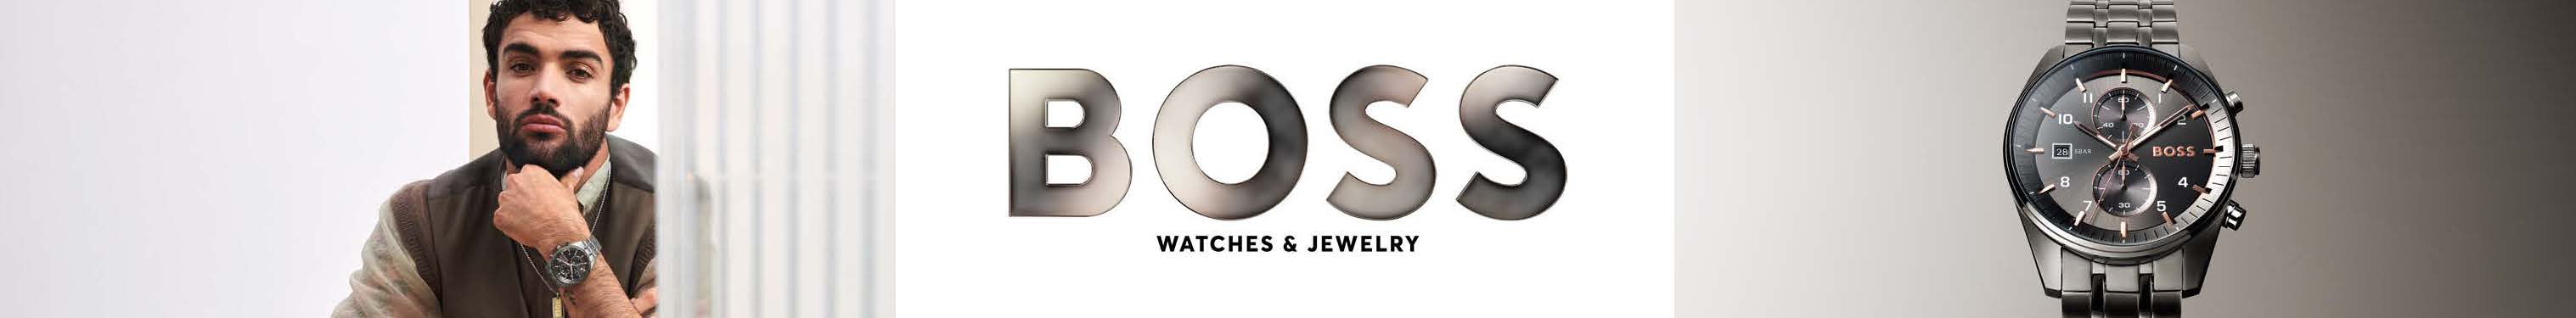 brand-boss-watches-2.jpg